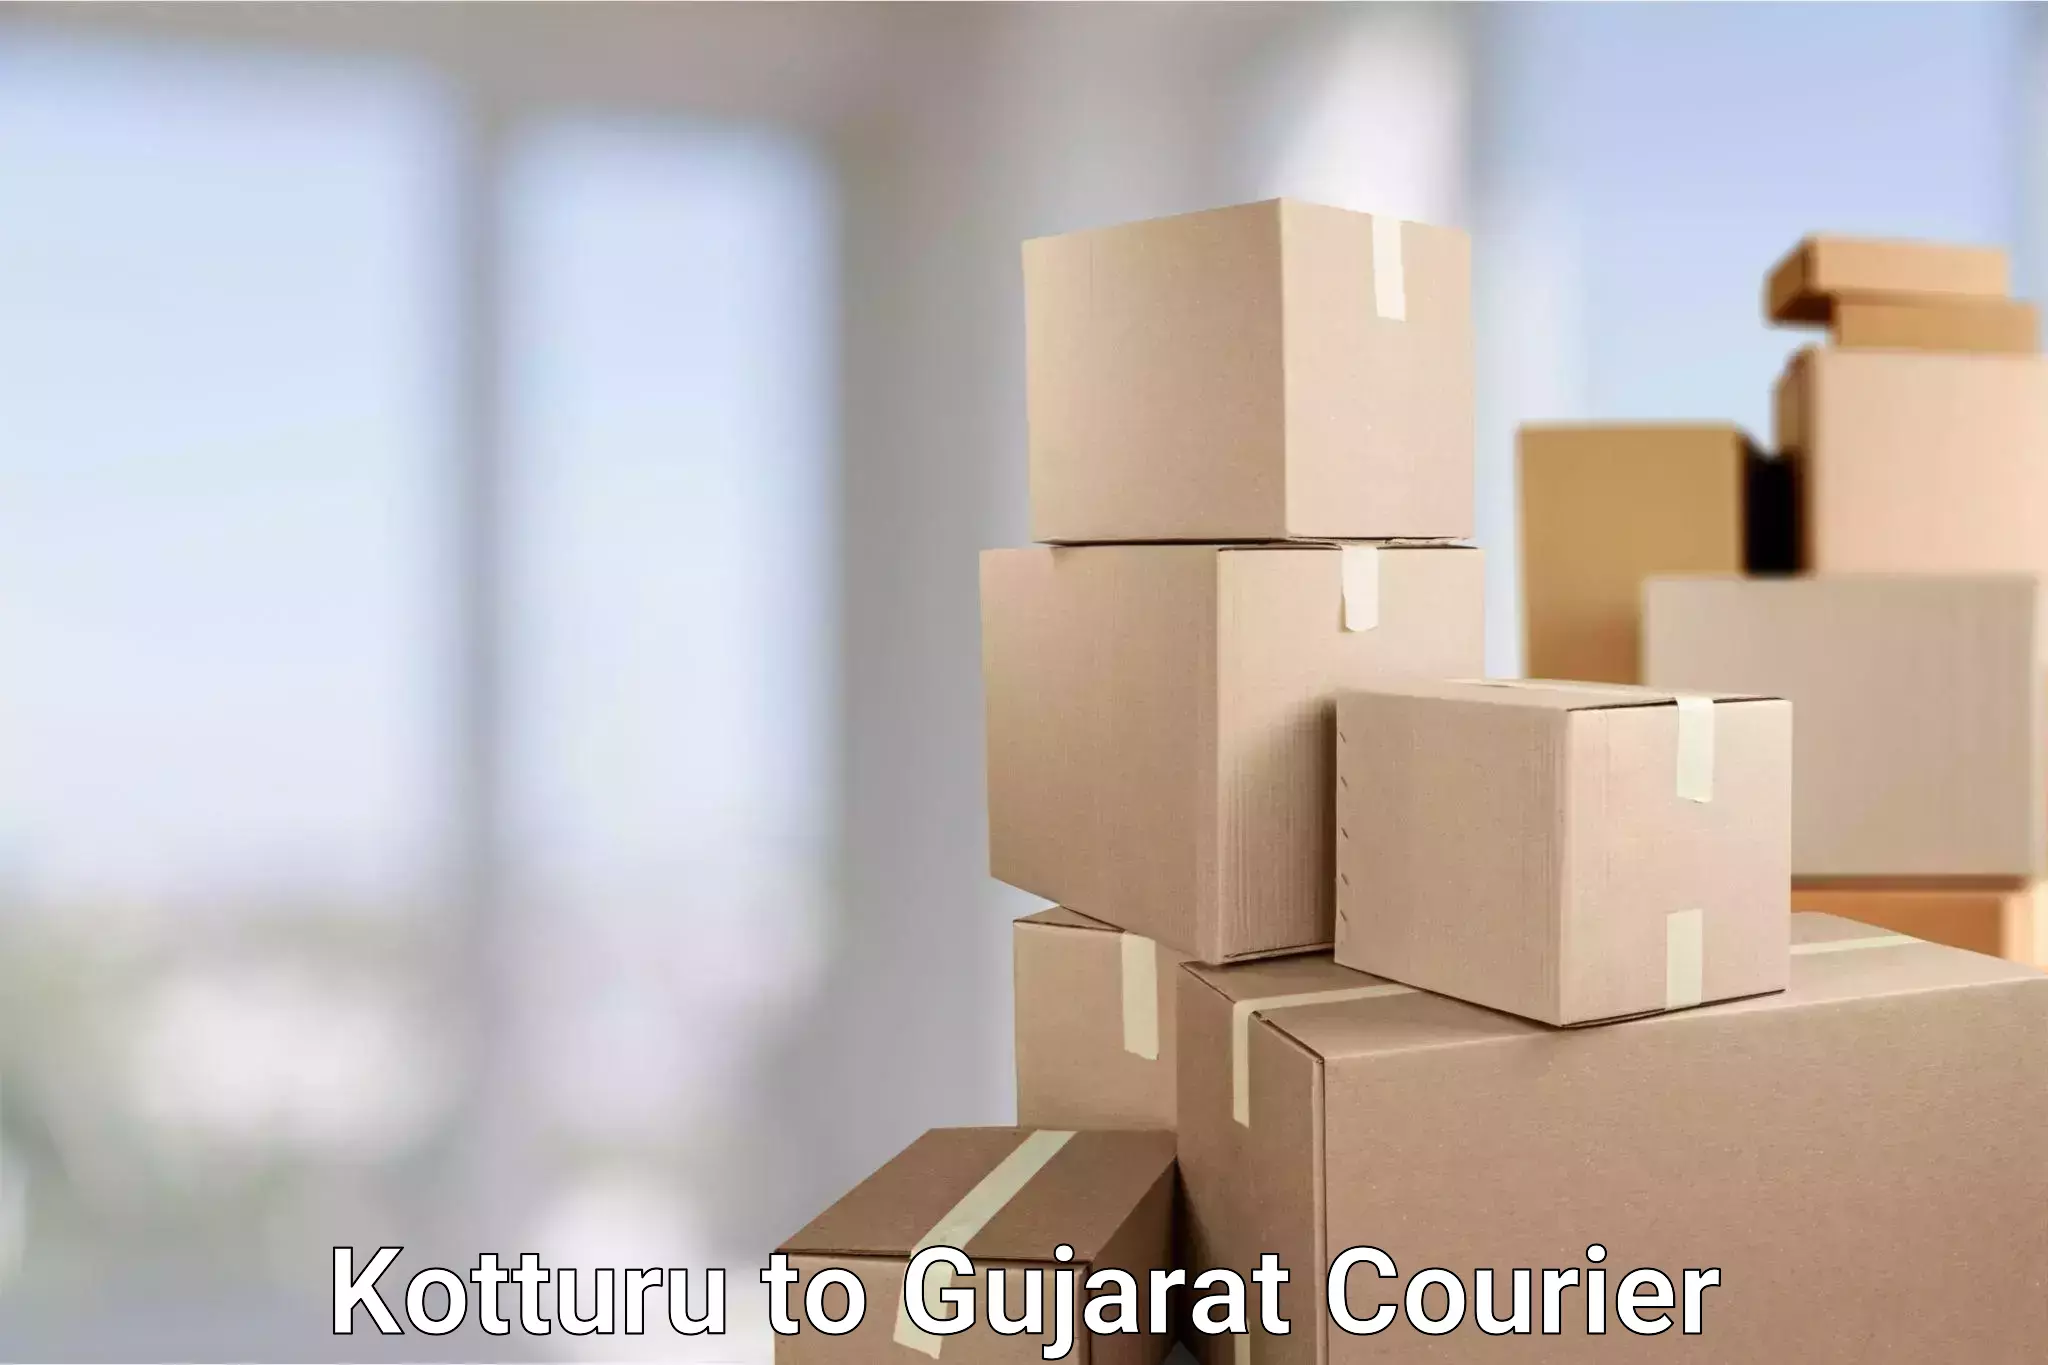 Secure packaging in Kotturu to Satlasana